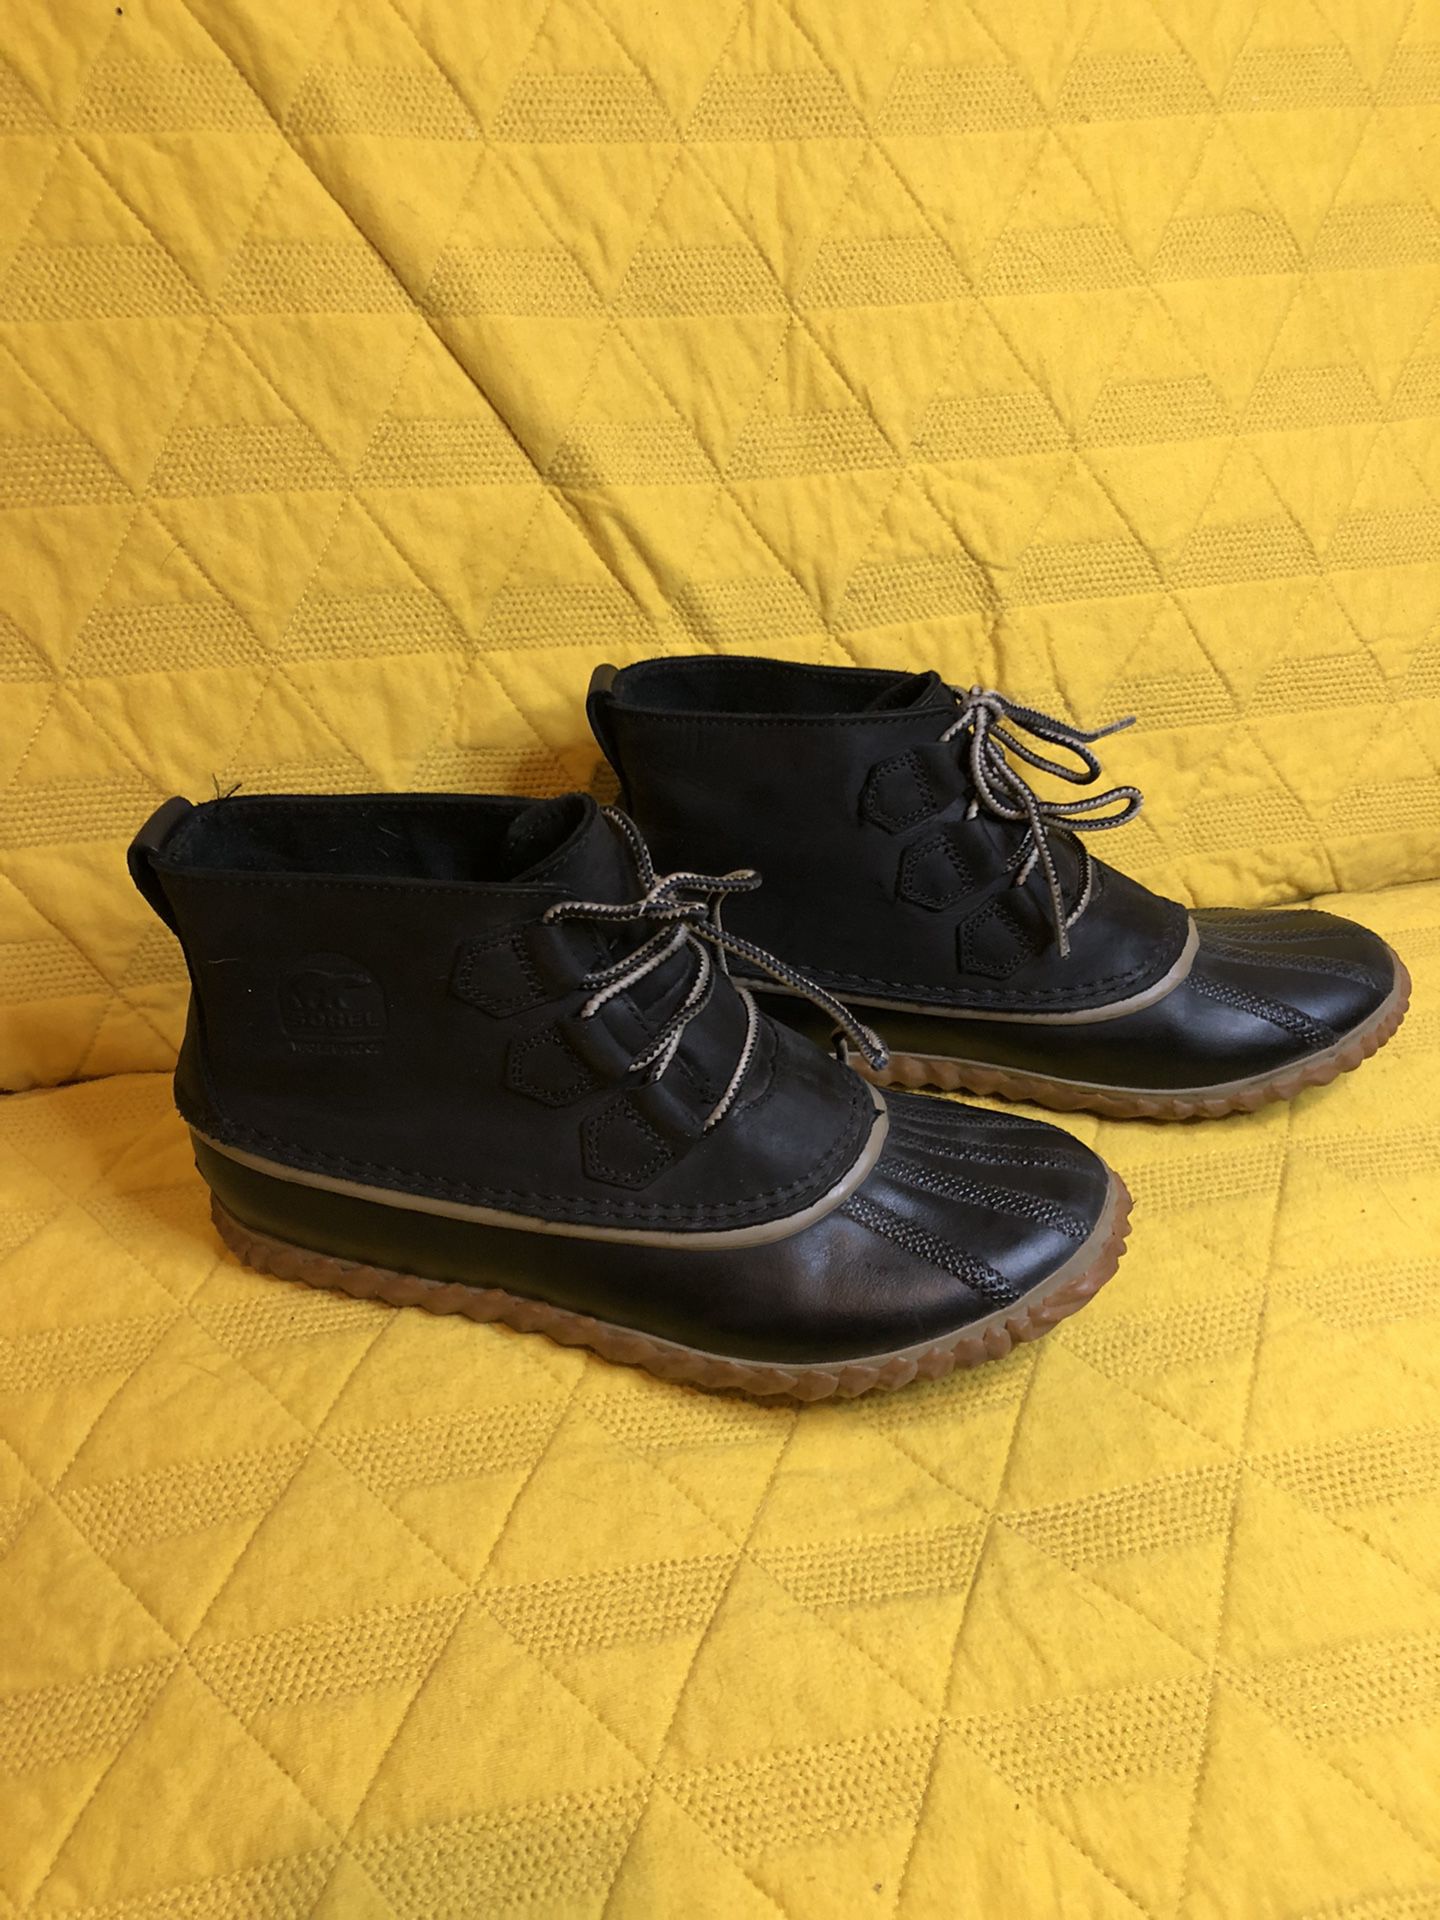 Waterproof Sorel “Duck shoes” Size 9